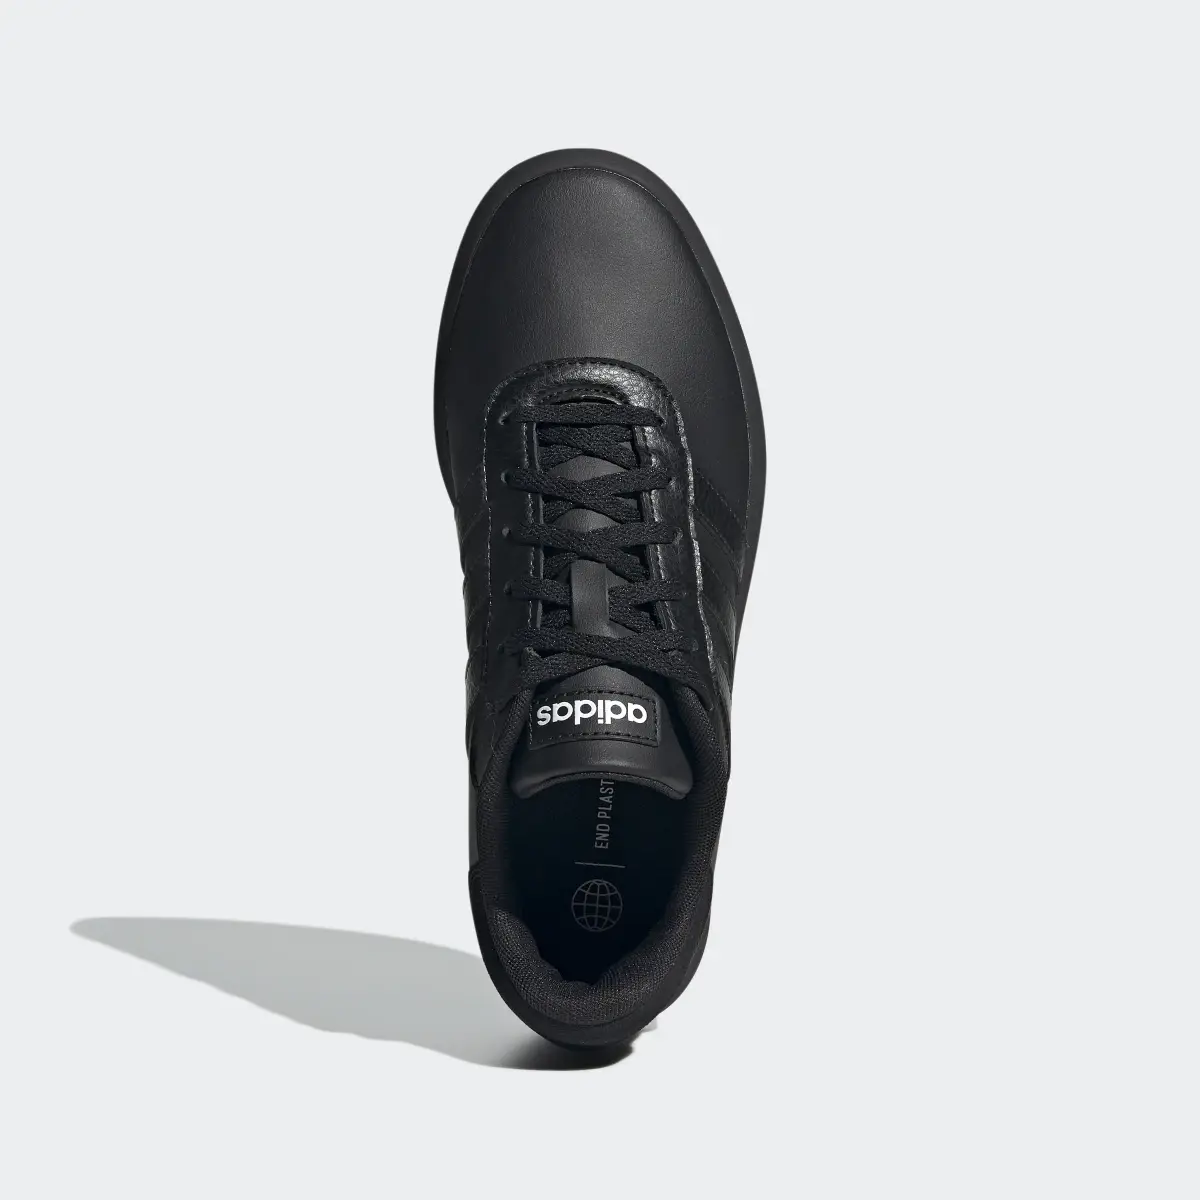 Adidas Court Platform Ayakkabı. 3